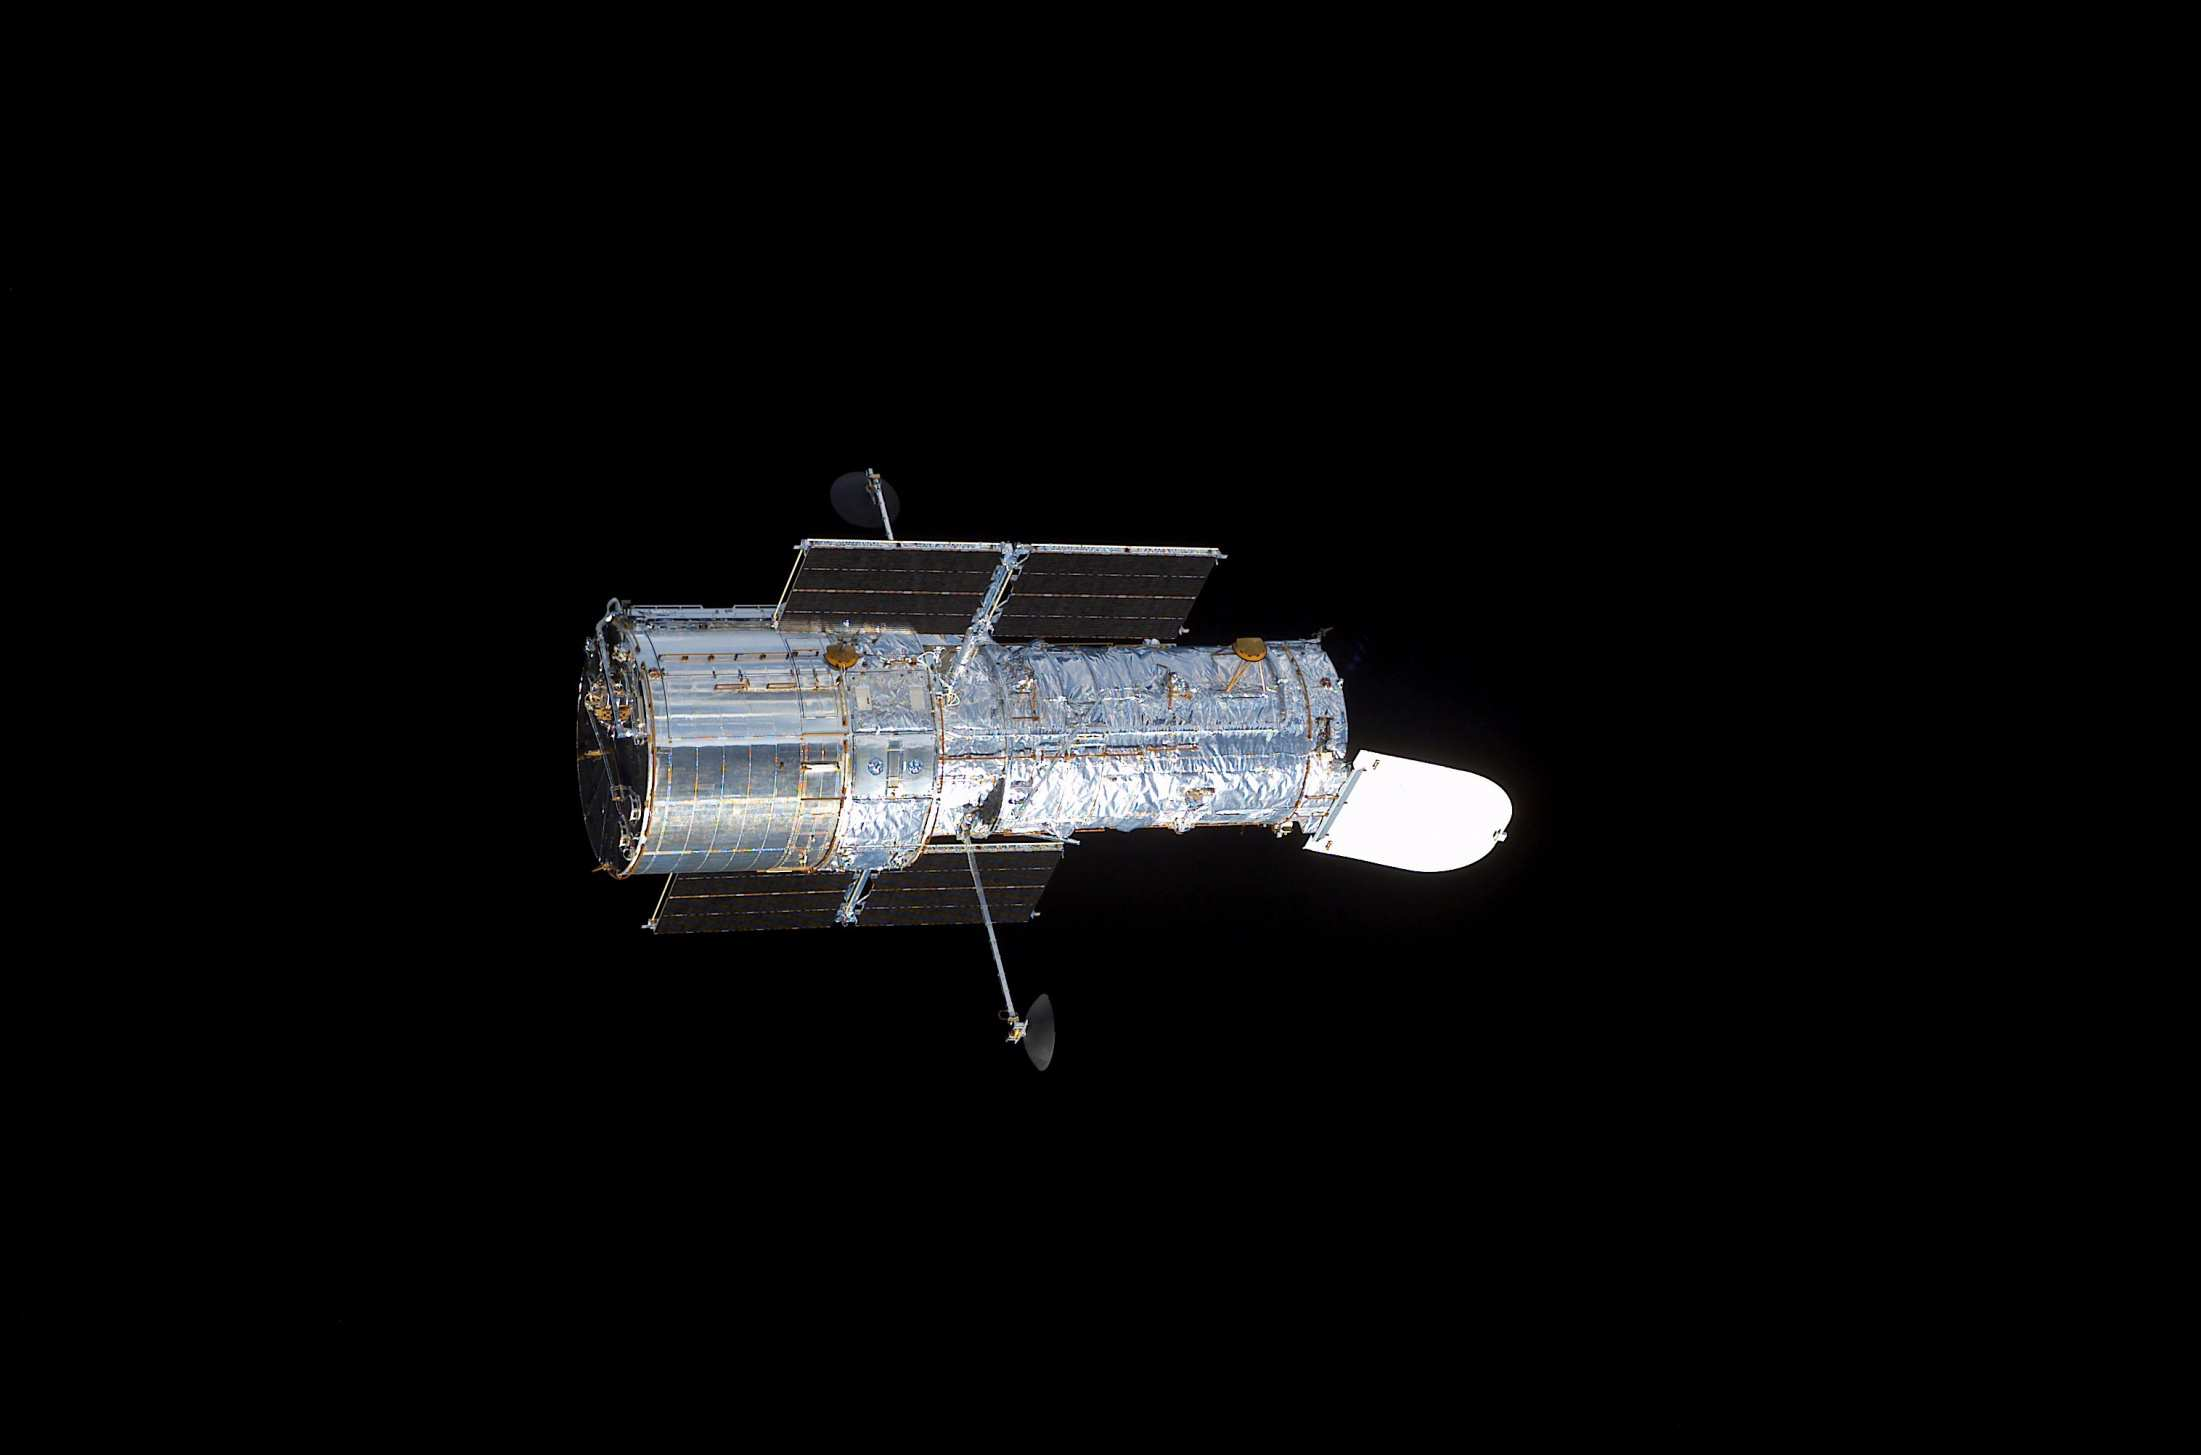 Telescopi Hubblespacetelescope (HST): NASA + ESA, orbita